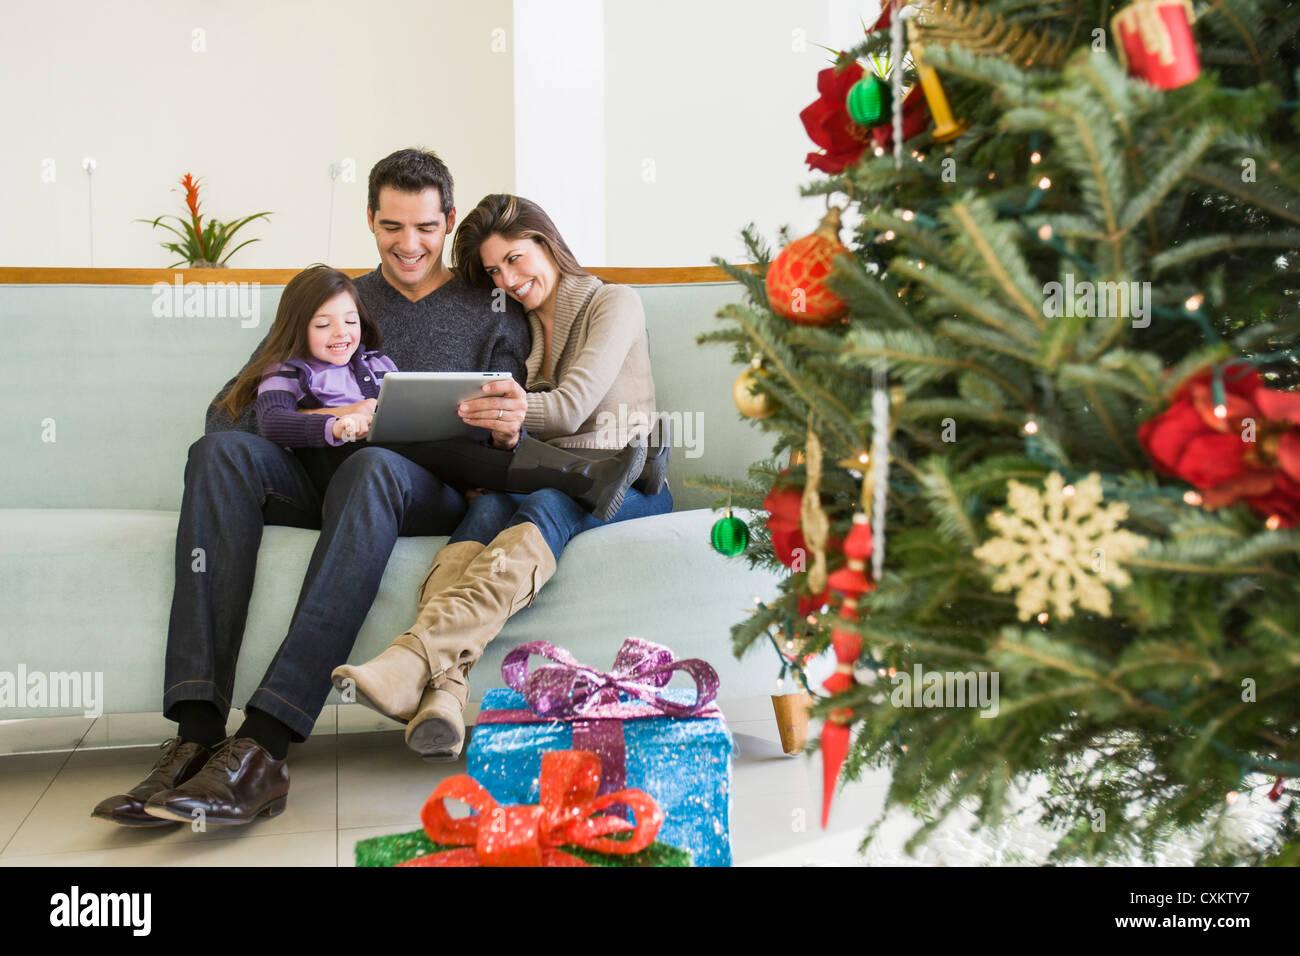 Family at Christmas, Florida, USA Stock Photo